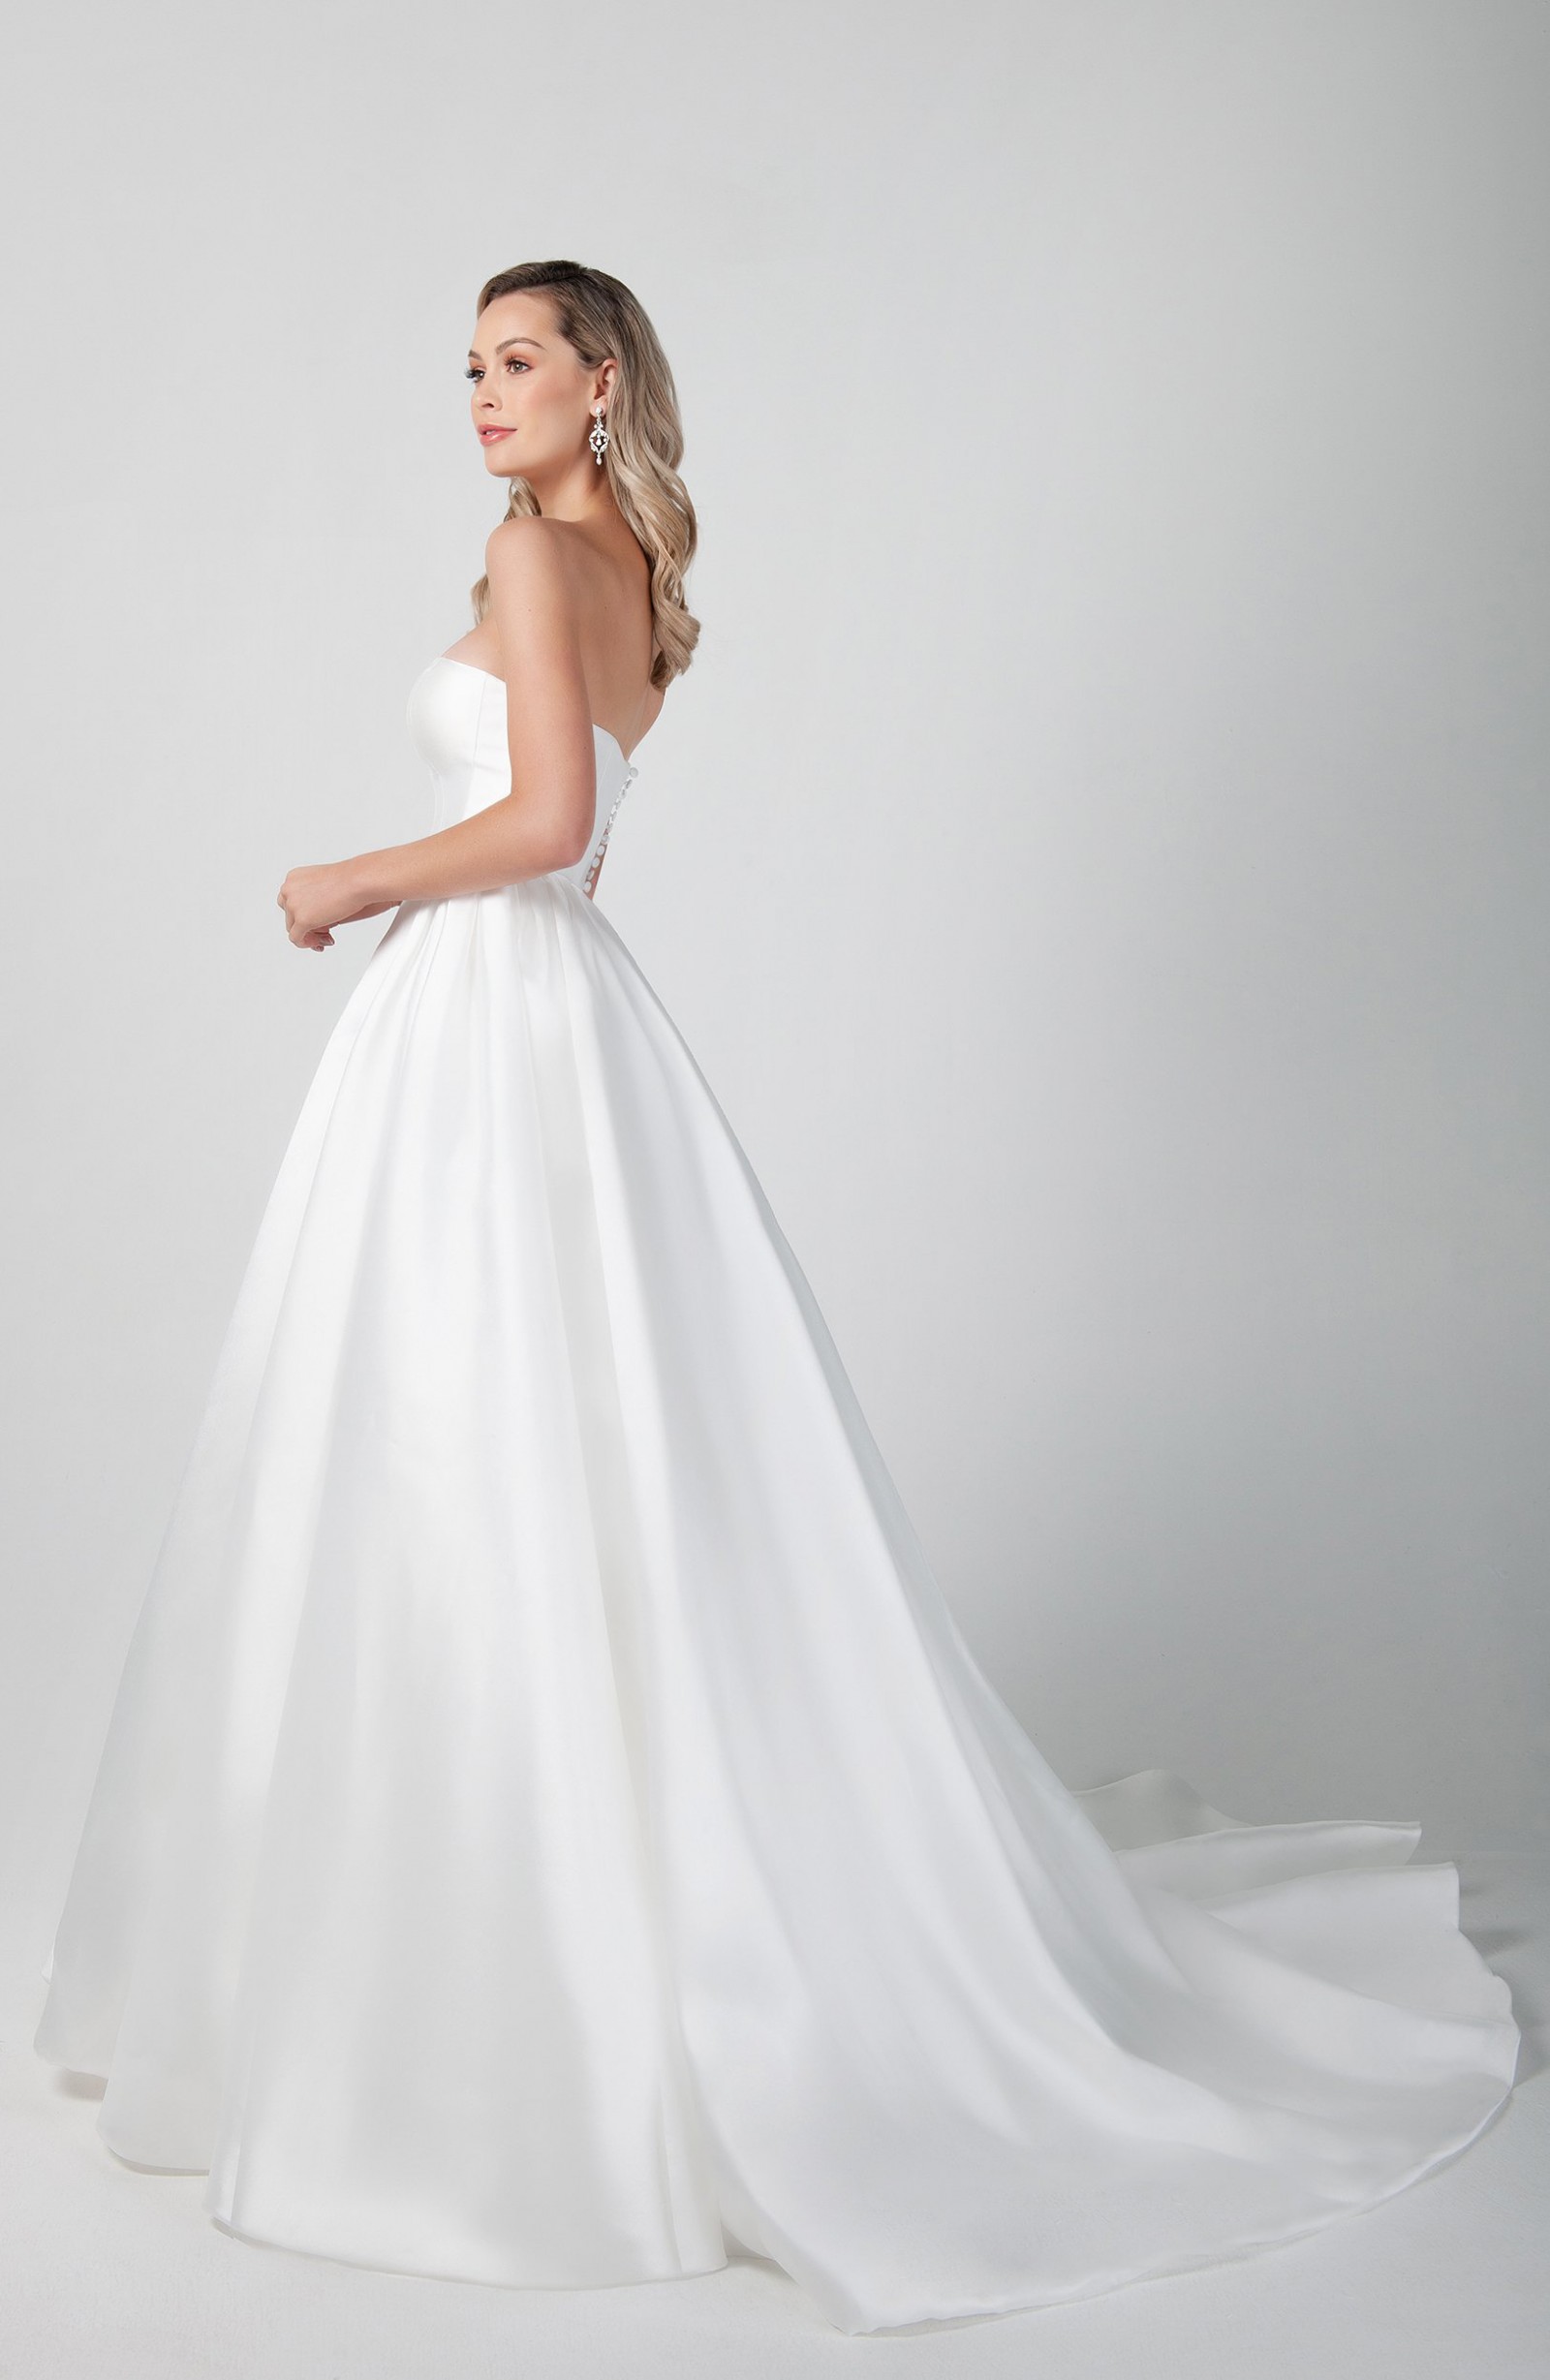 Michelle Roth Maine Wedding Dress Save 29% - Stillwhite